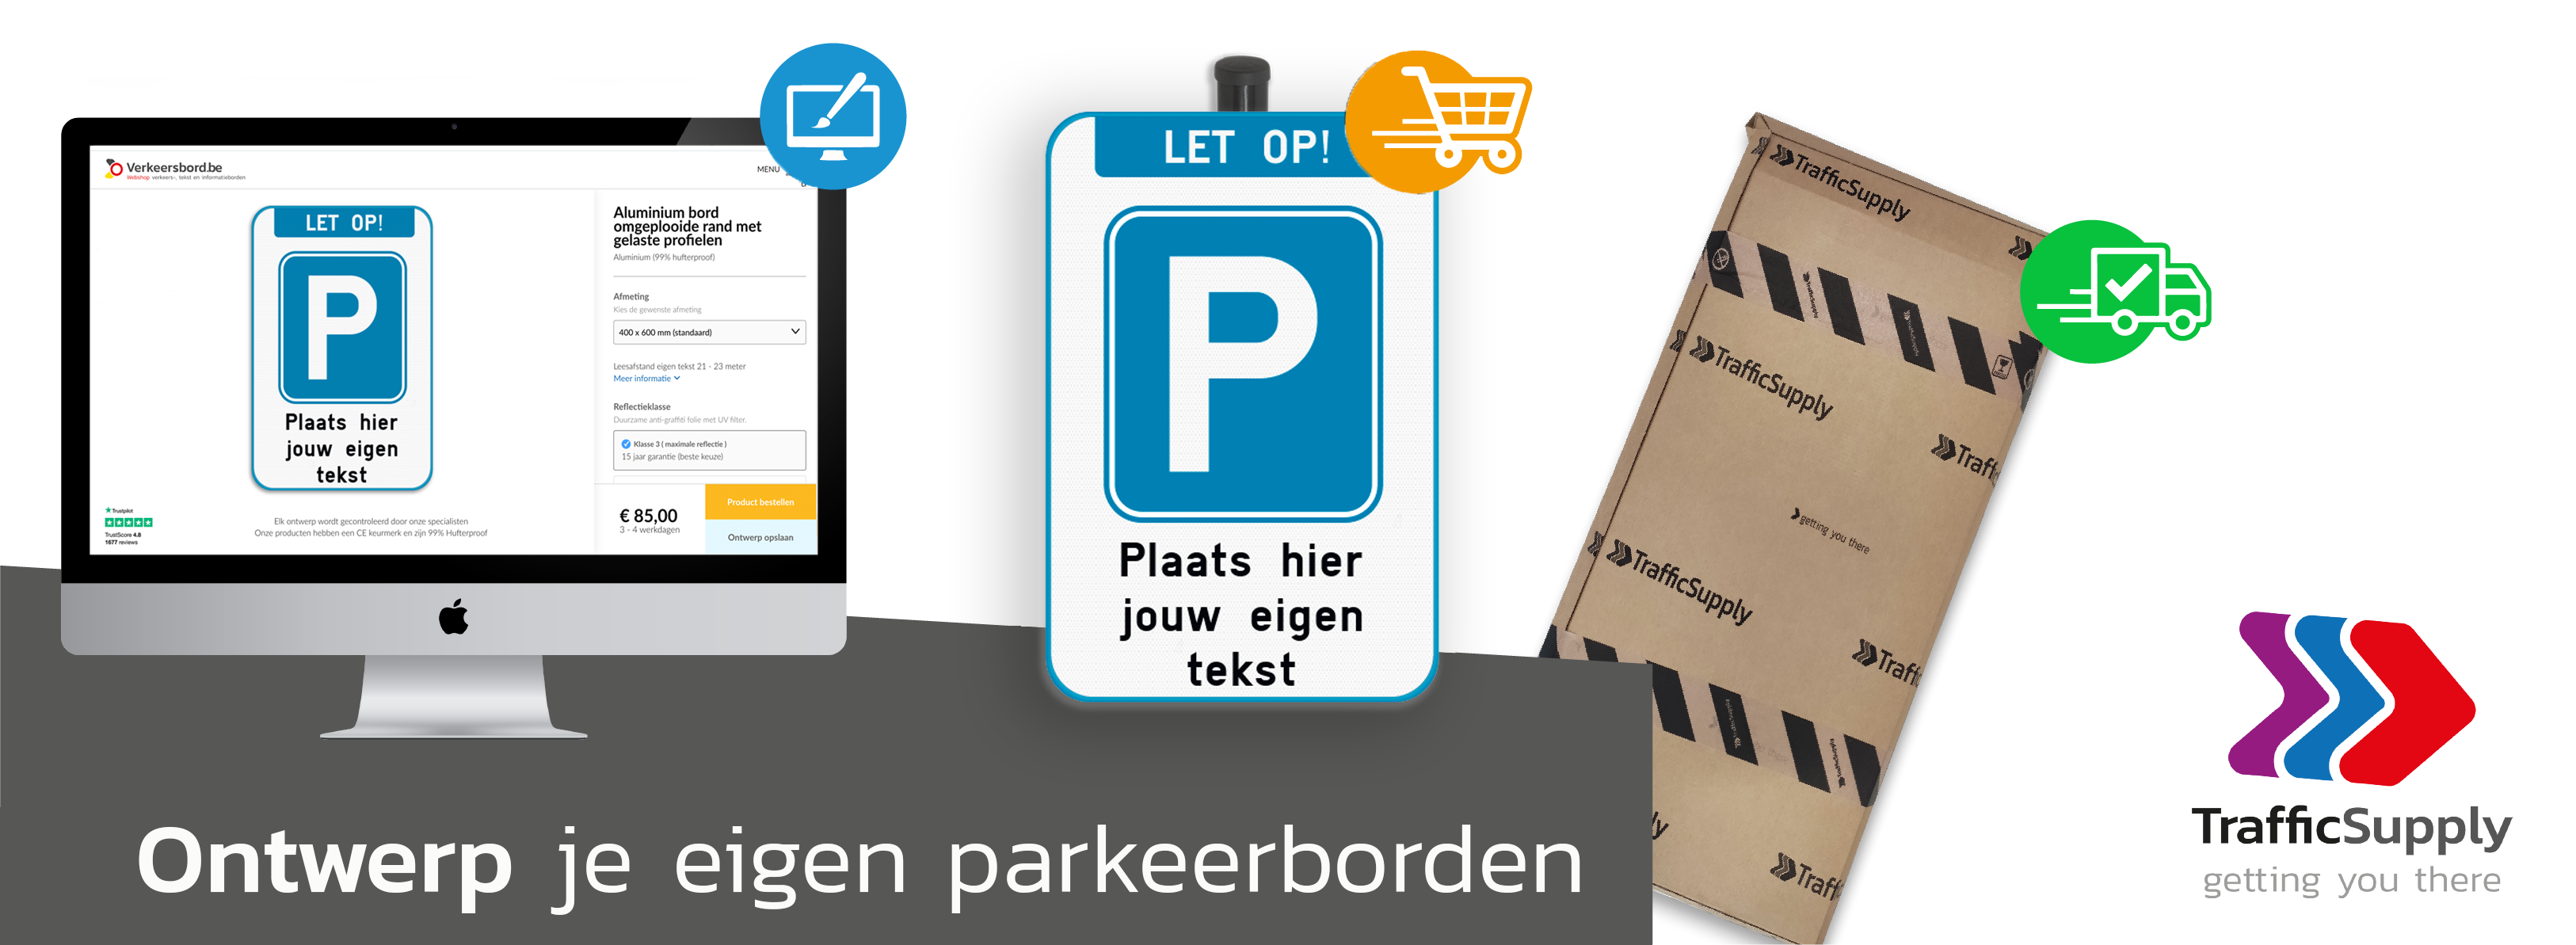 Parkeerborden kopen | Online ontwerpen & bestellen geleverd